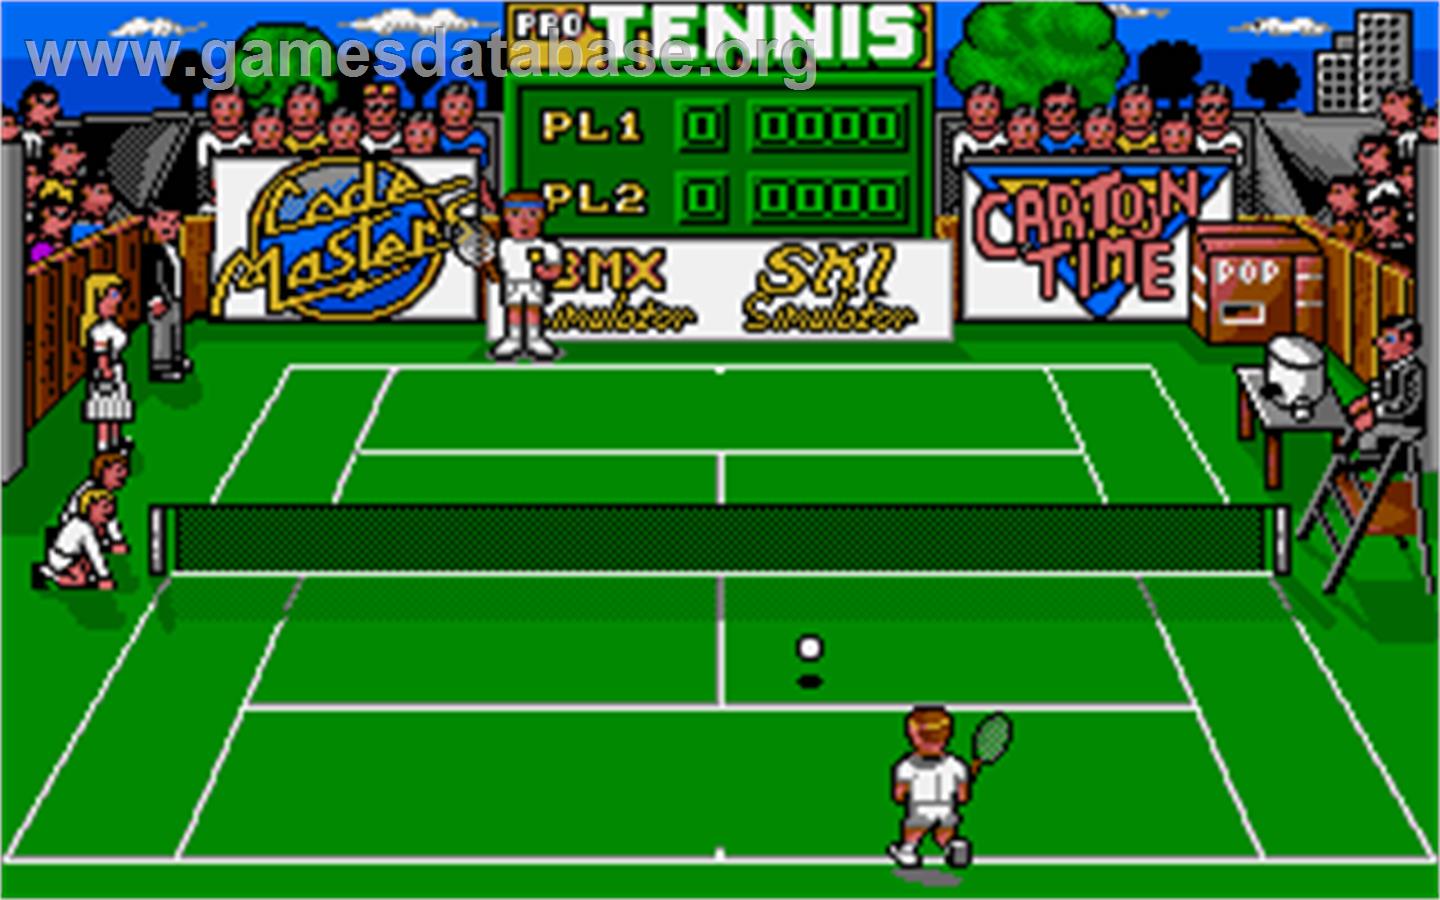 Pro Tennis Simulator - Atari ST - Artwork - In Game